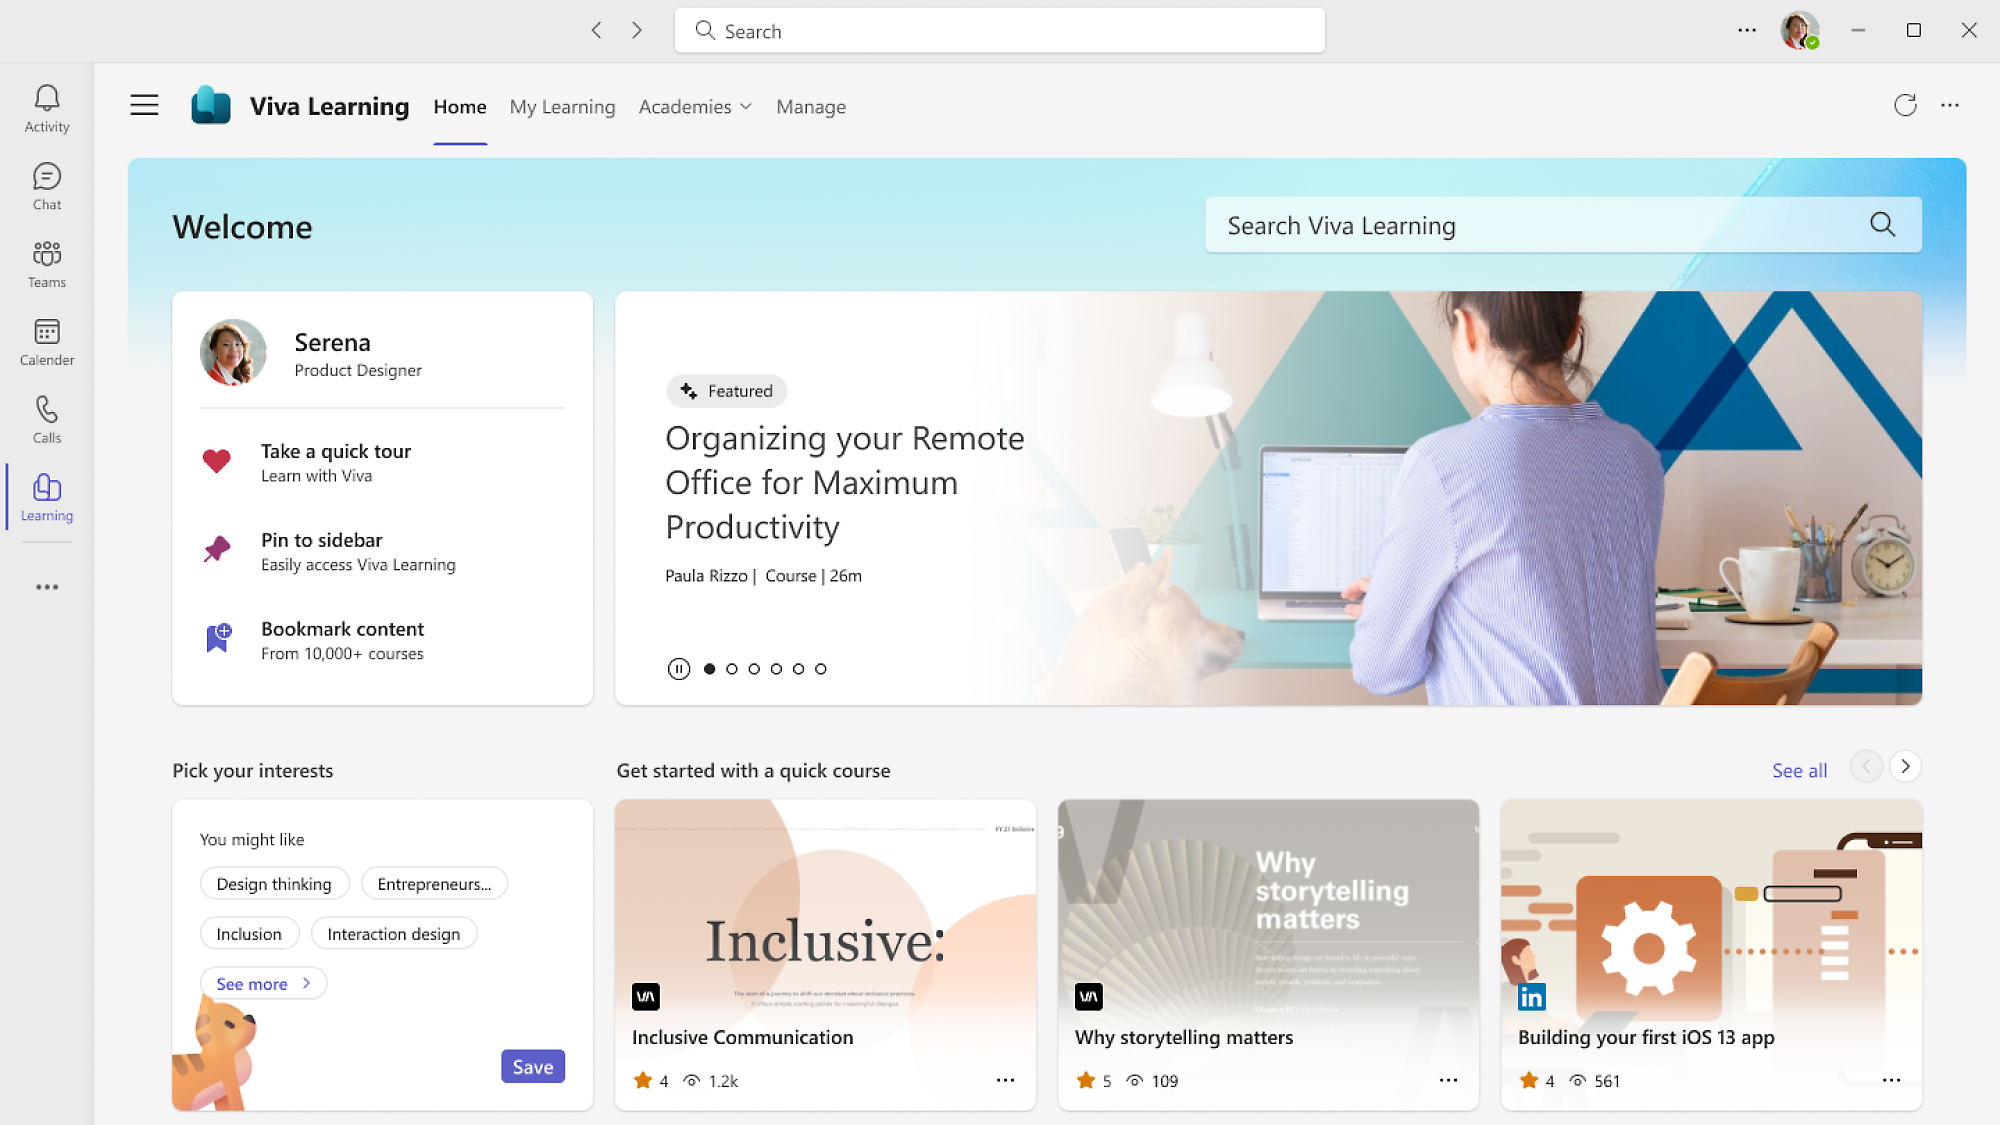 Viva Learning 平台：搜尋、課程、管理、特色內容、興趣、生產力和建議